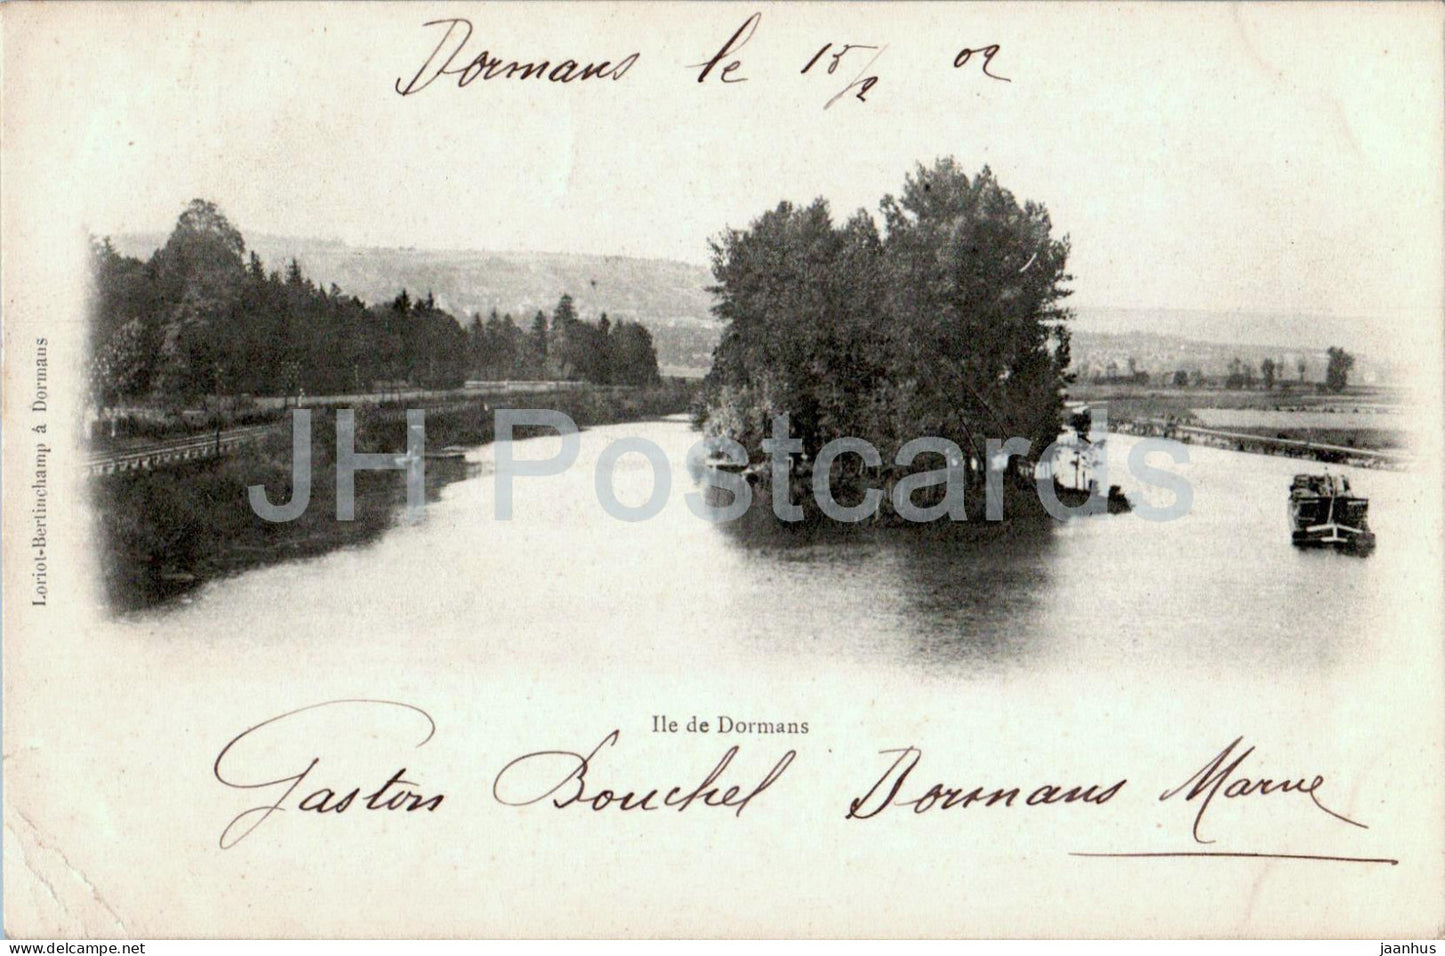 Ile de Dormans - old postcard - 1902 - France - used - JH Postcards